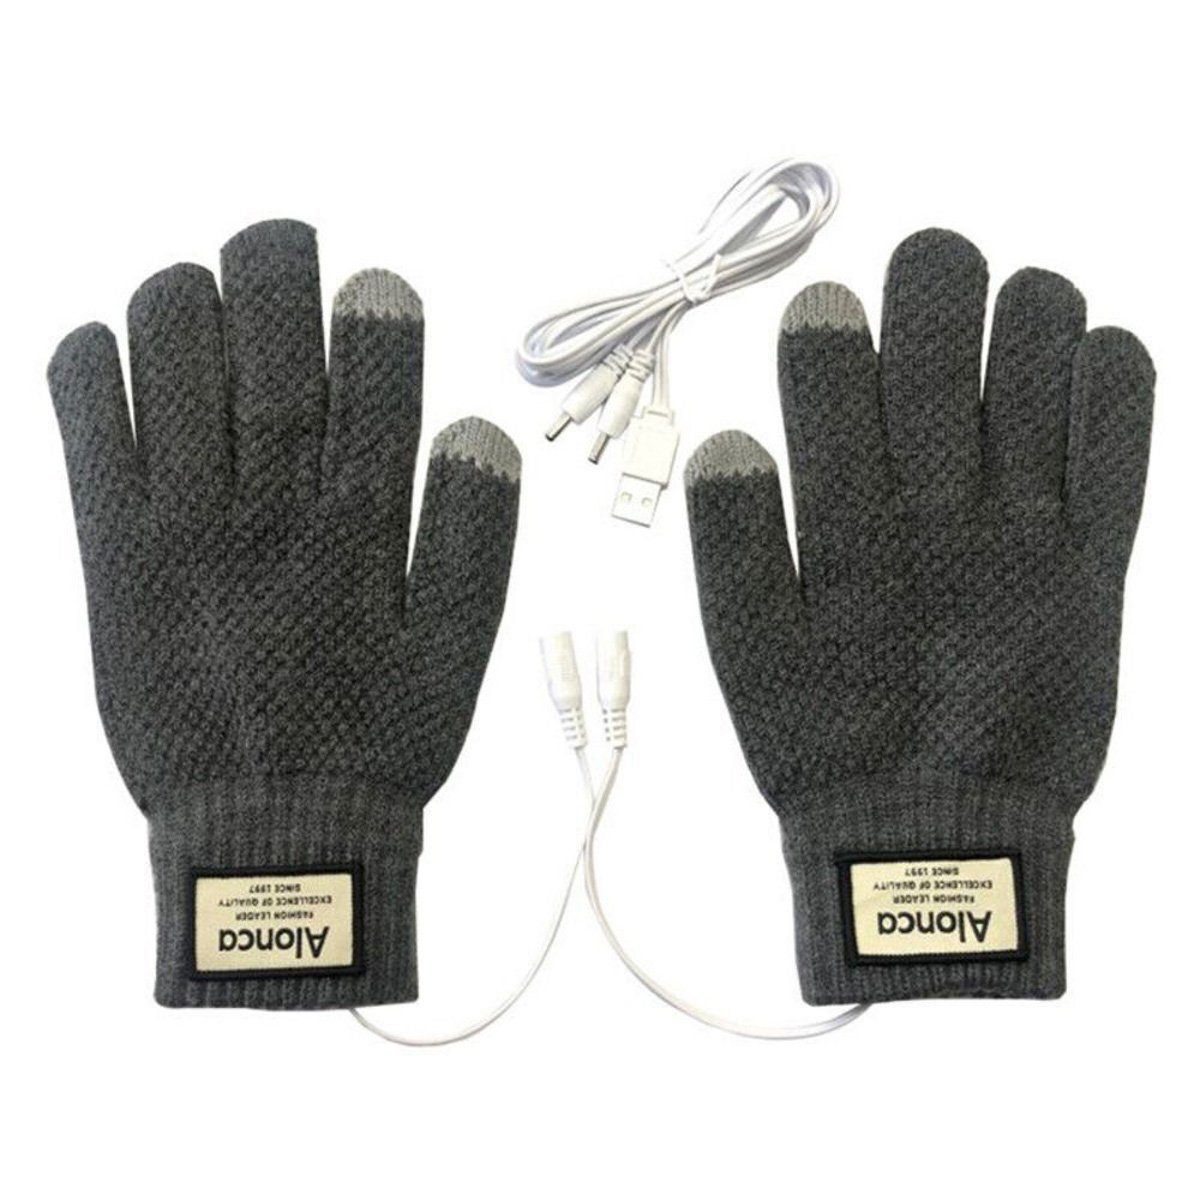 AUKUU Winter-Arbeitshandschuhe Sporthandschuhe Lederhandschuhe USB-wiederaufladbare Strickhandschuhe grau